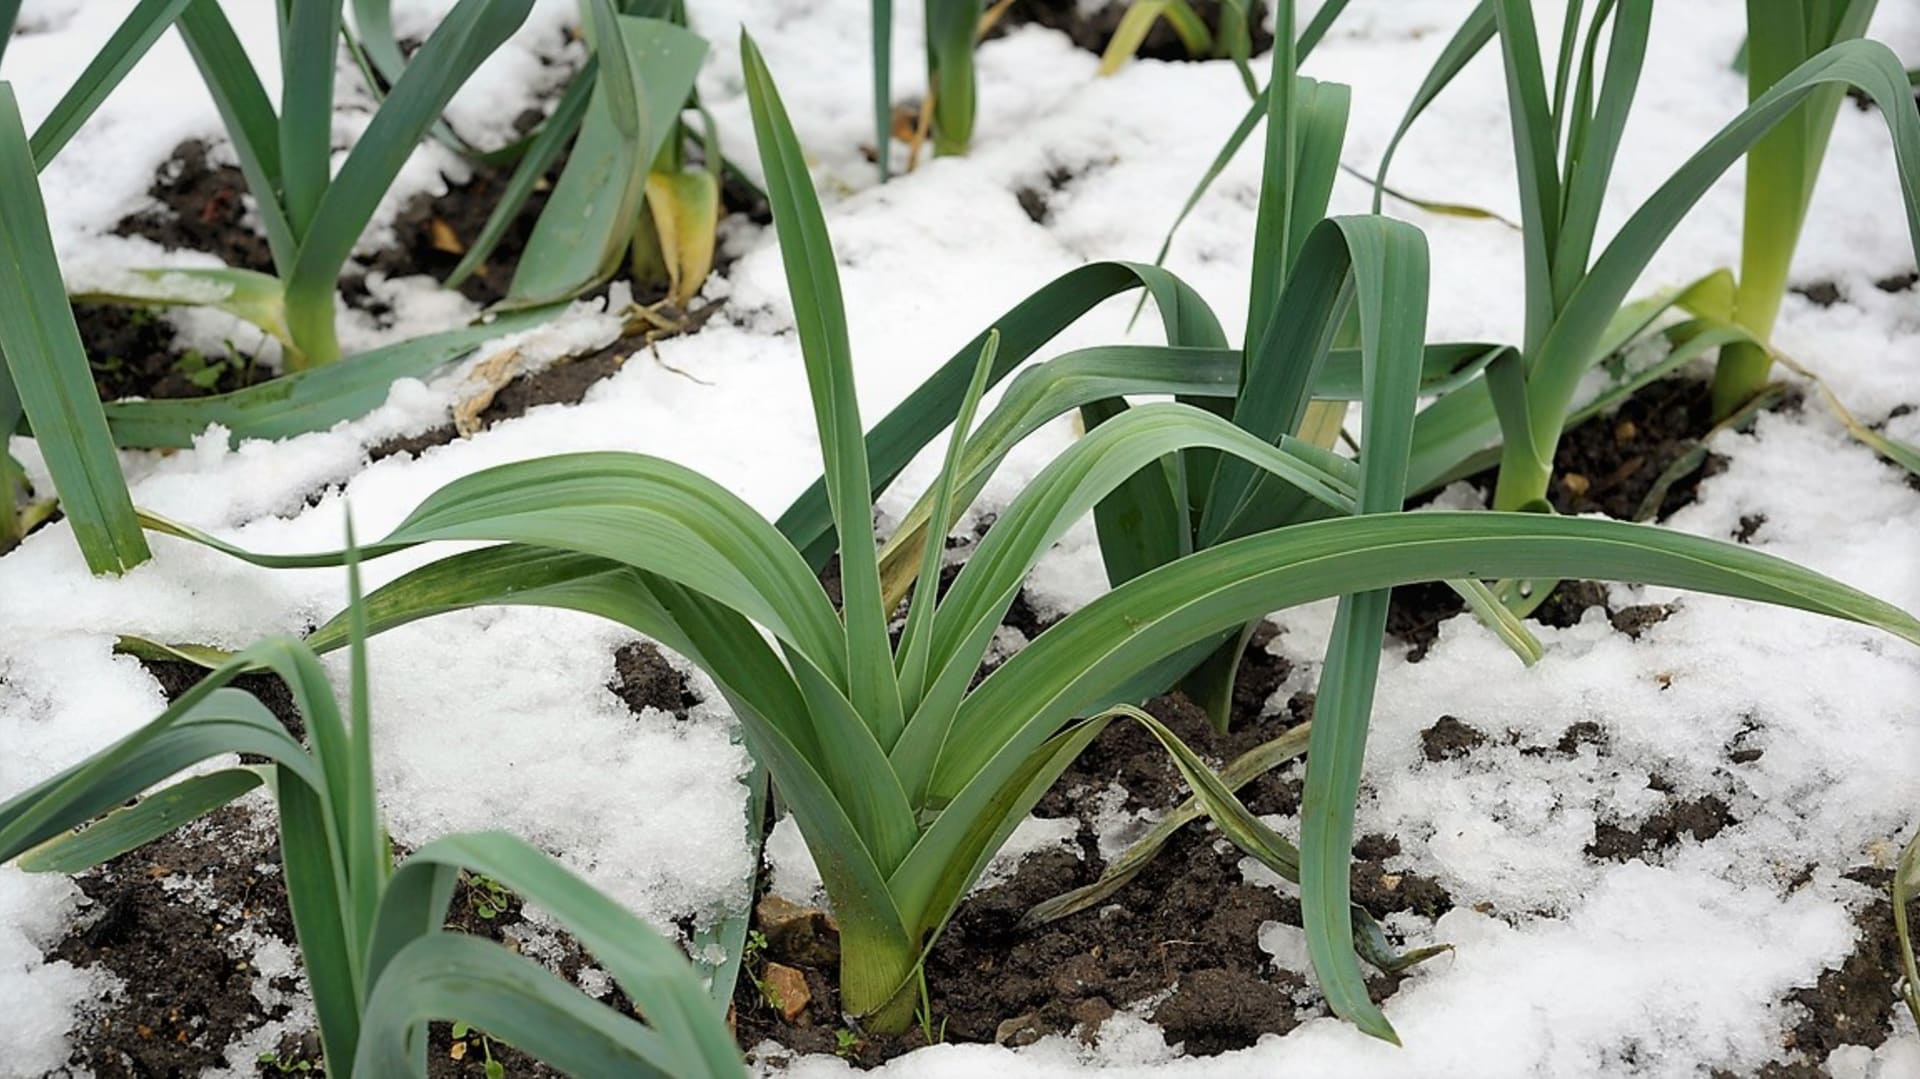 Zimní pór může zůstat v zemi přes zimu, snese i teploty okolo –15 °C